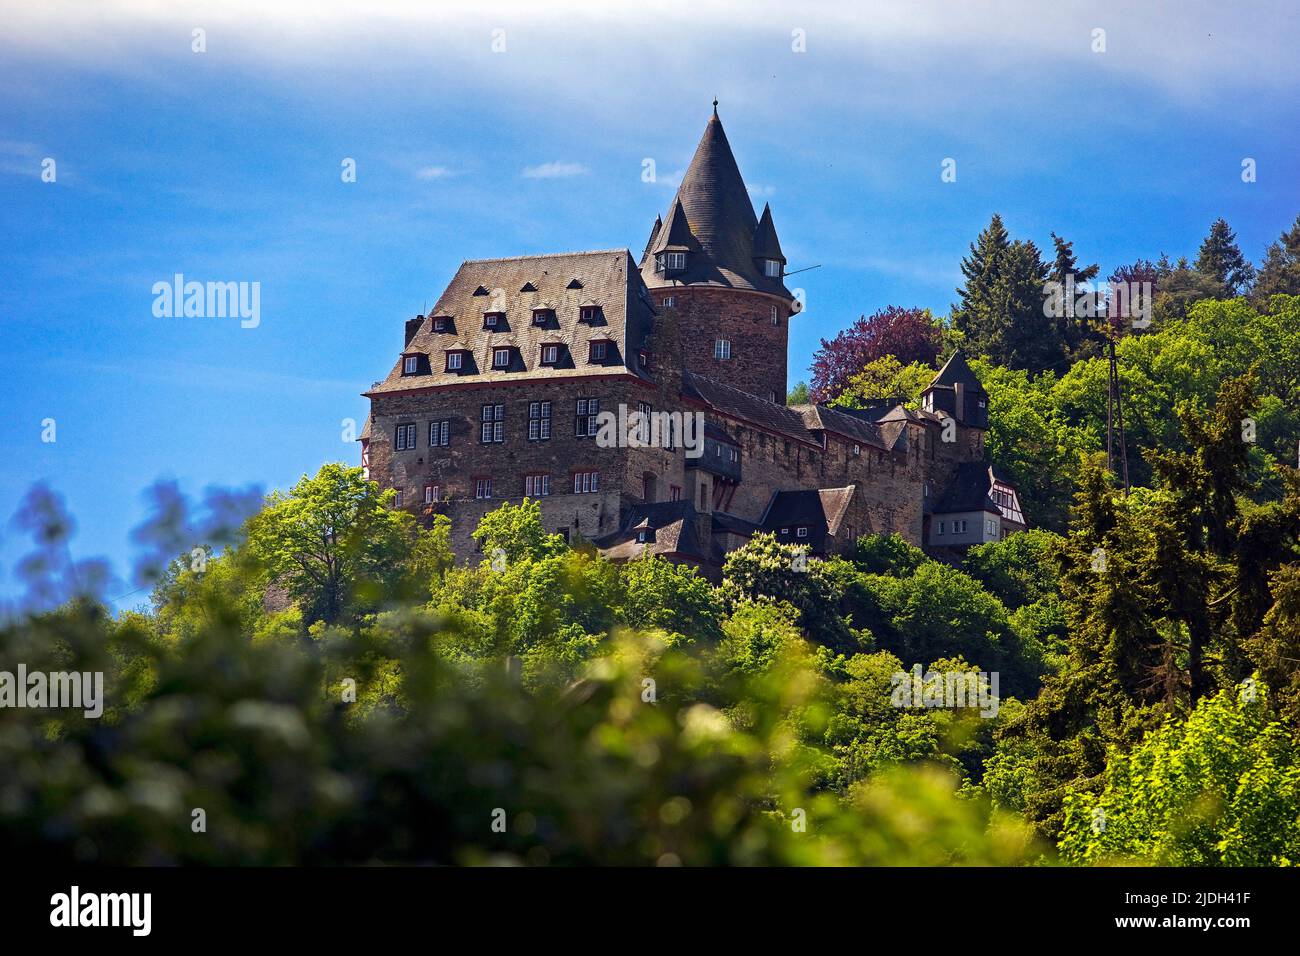 Château de Stahleck, site du patrimoine de l'UNESCO et aujourd'hui auberge de jeunesse, Allemagne, Rhénanie-Palatinat, Bacharach Banque D'Images